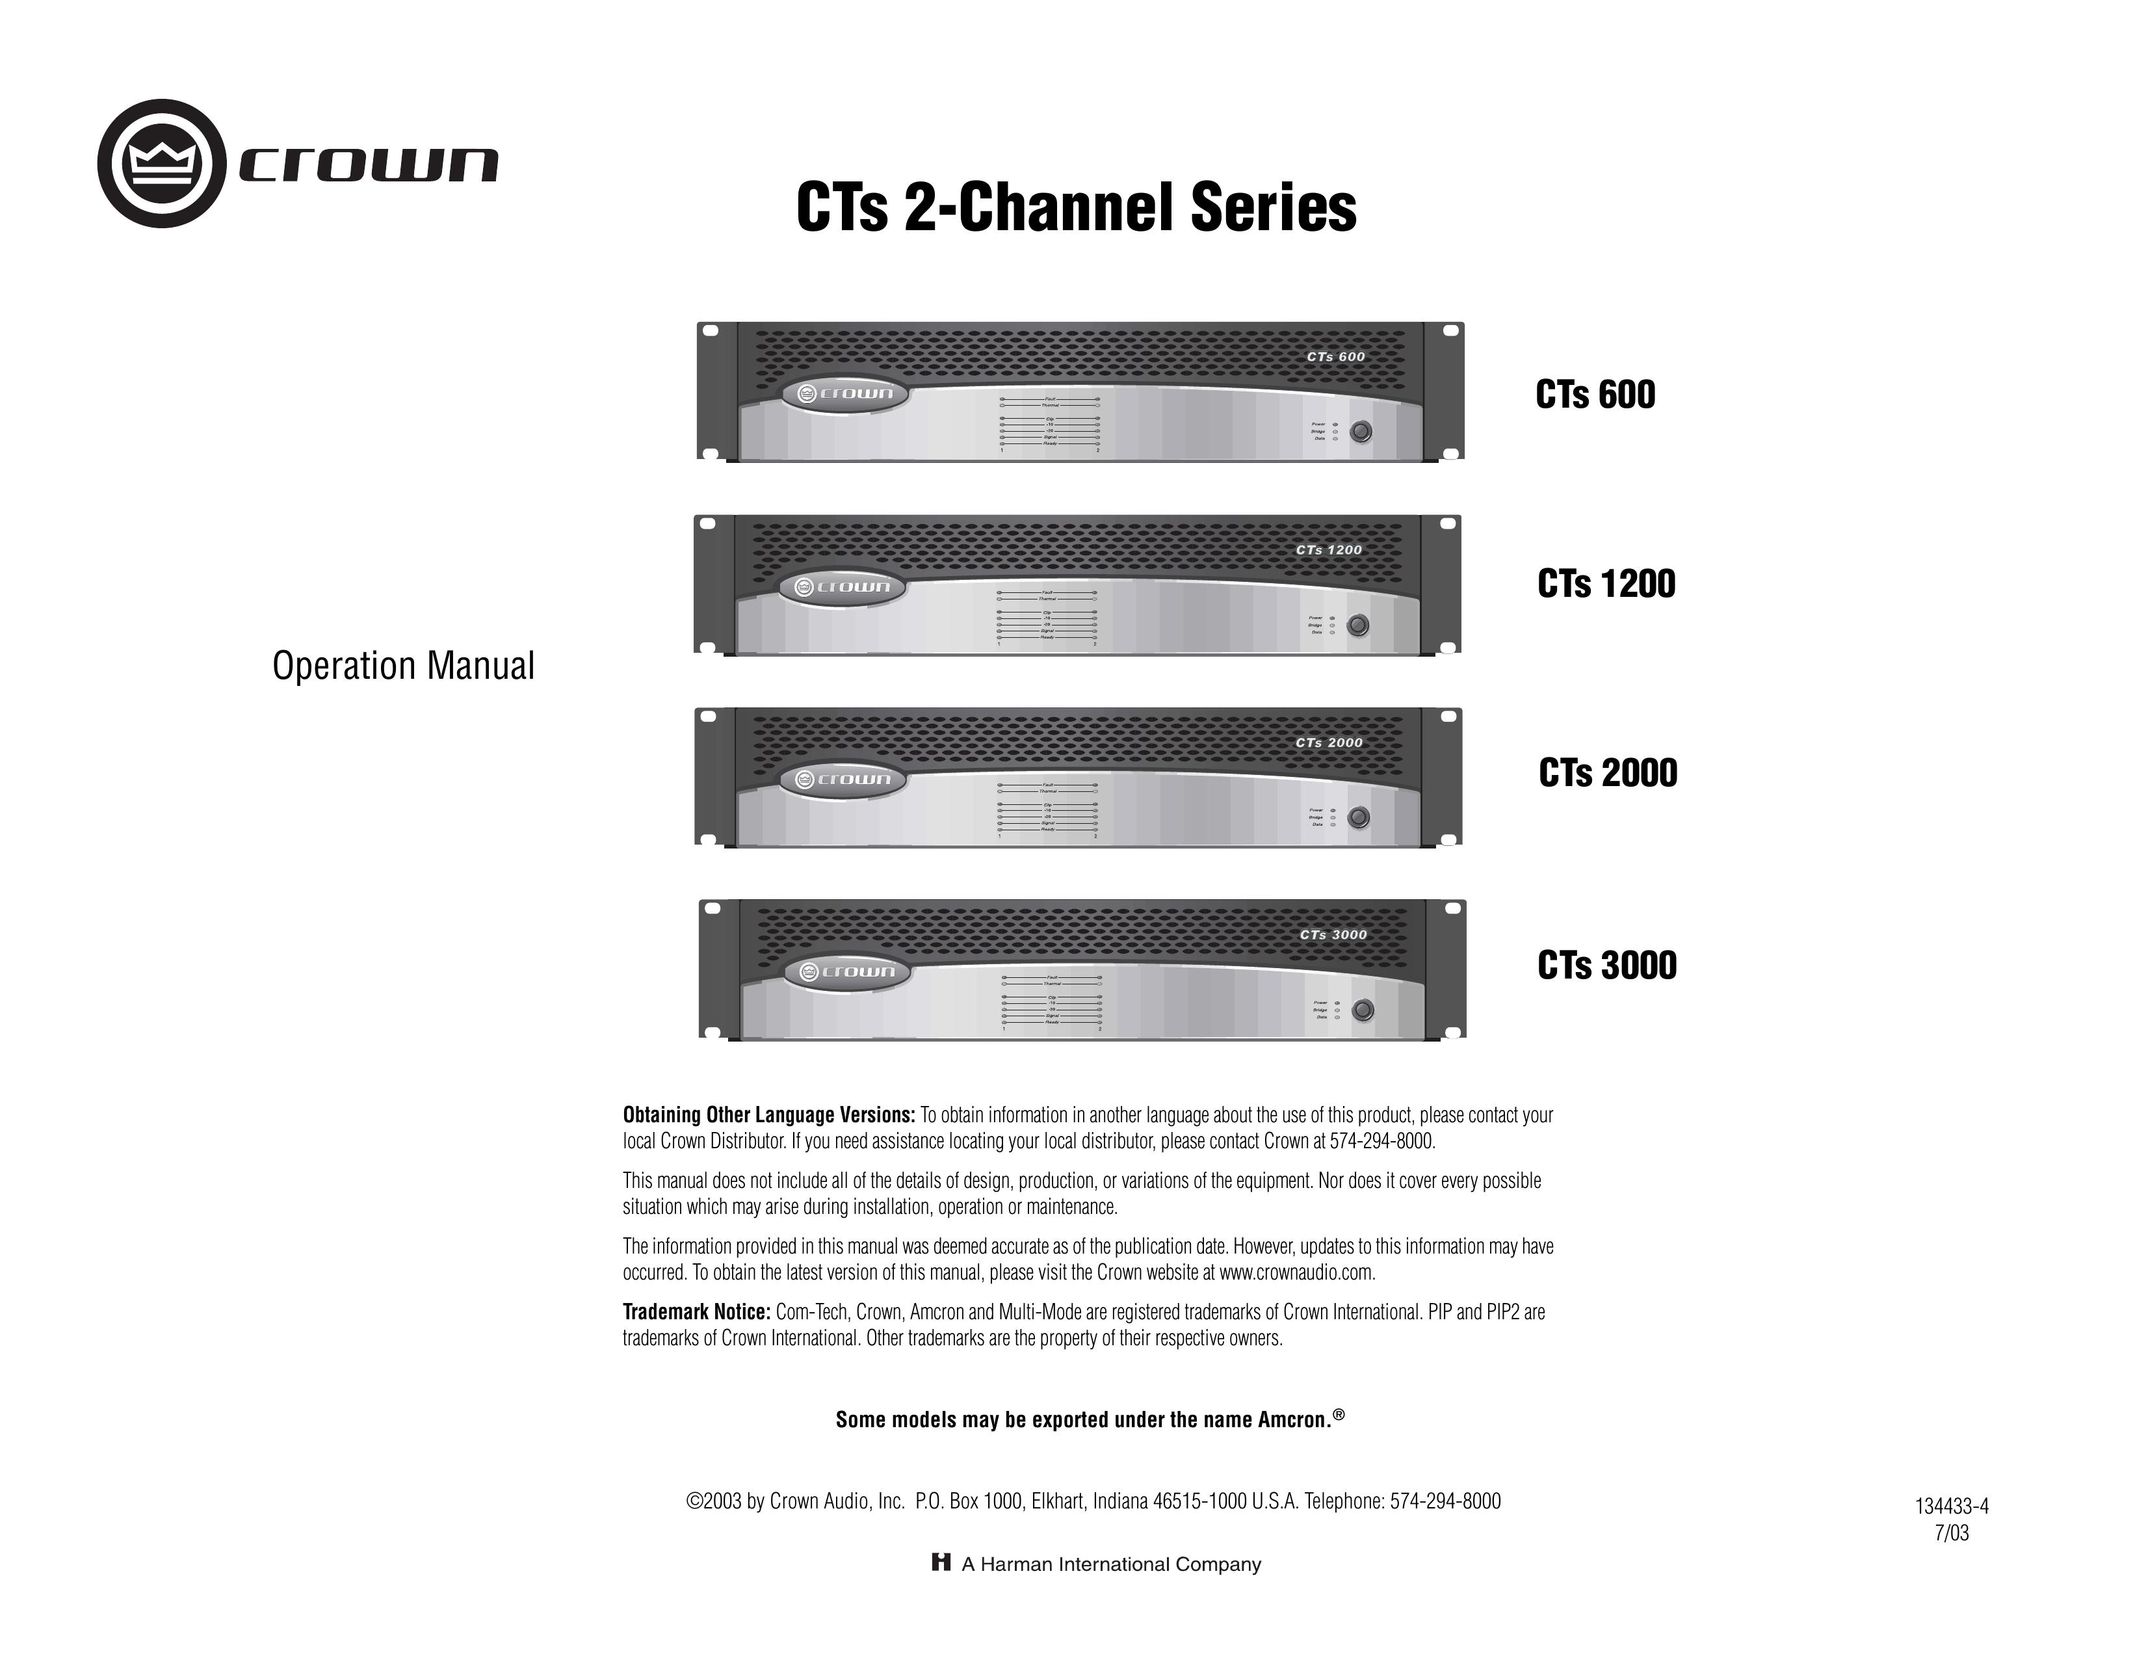 Crown Audio CTs 3000 Speaker User Manual